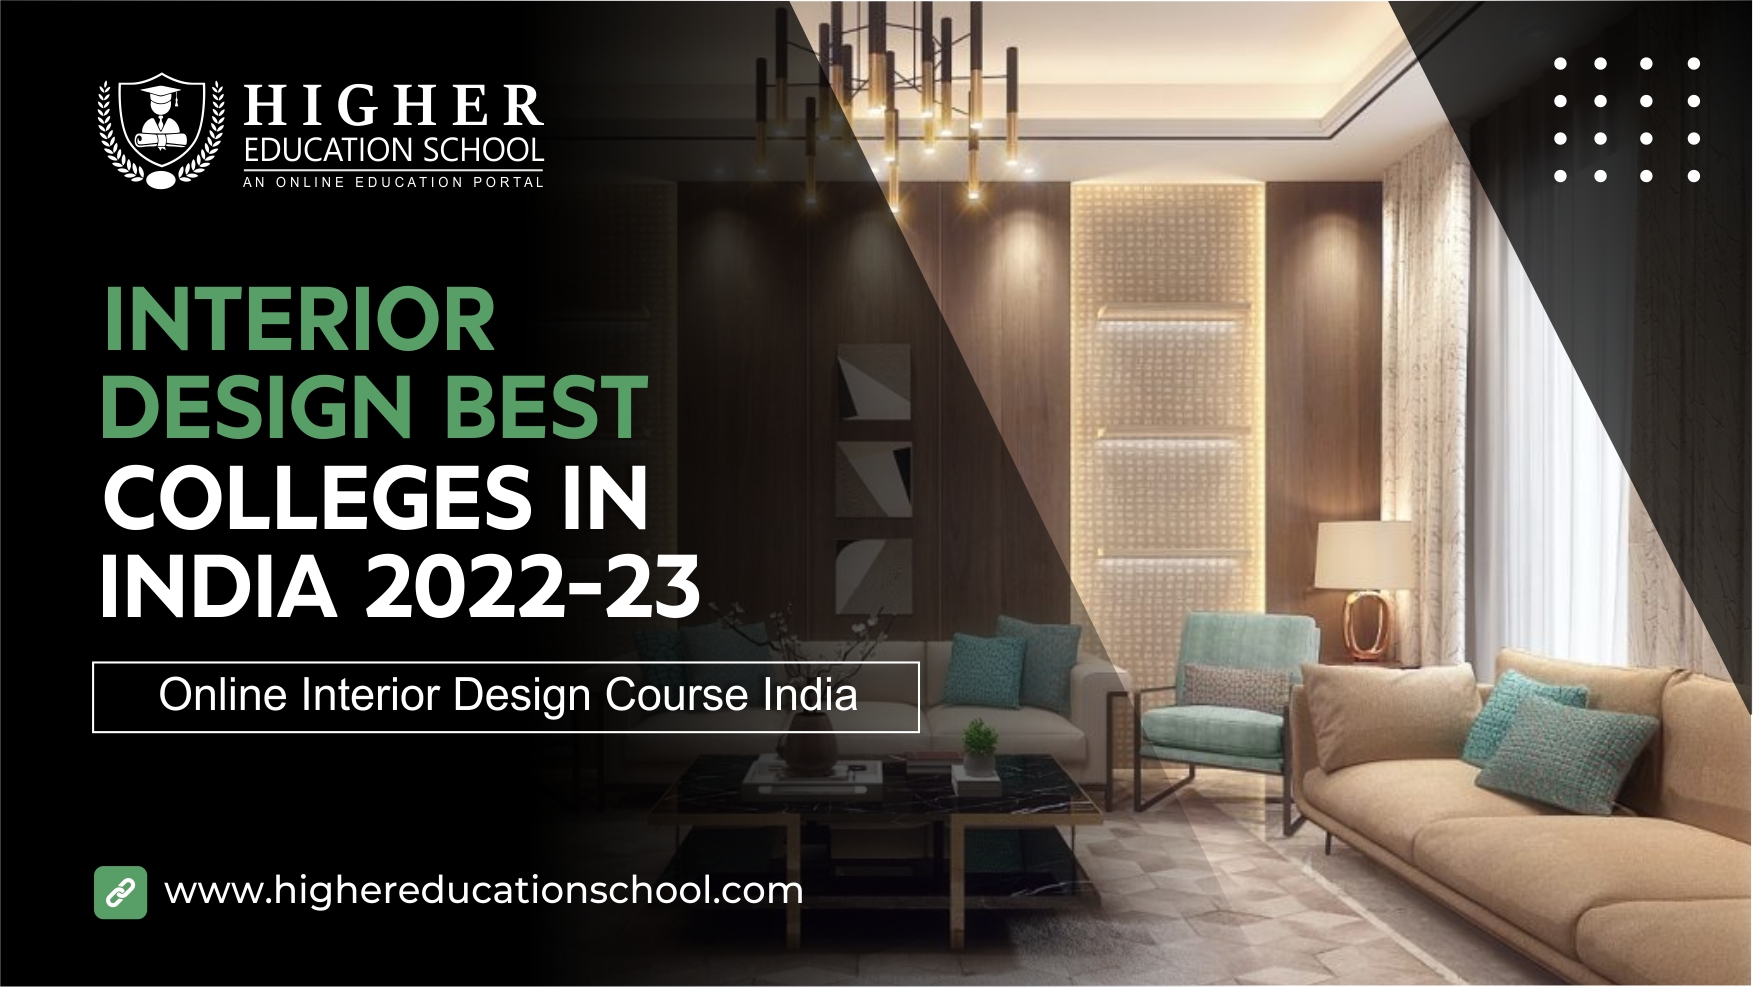 Online Interior Design Course India